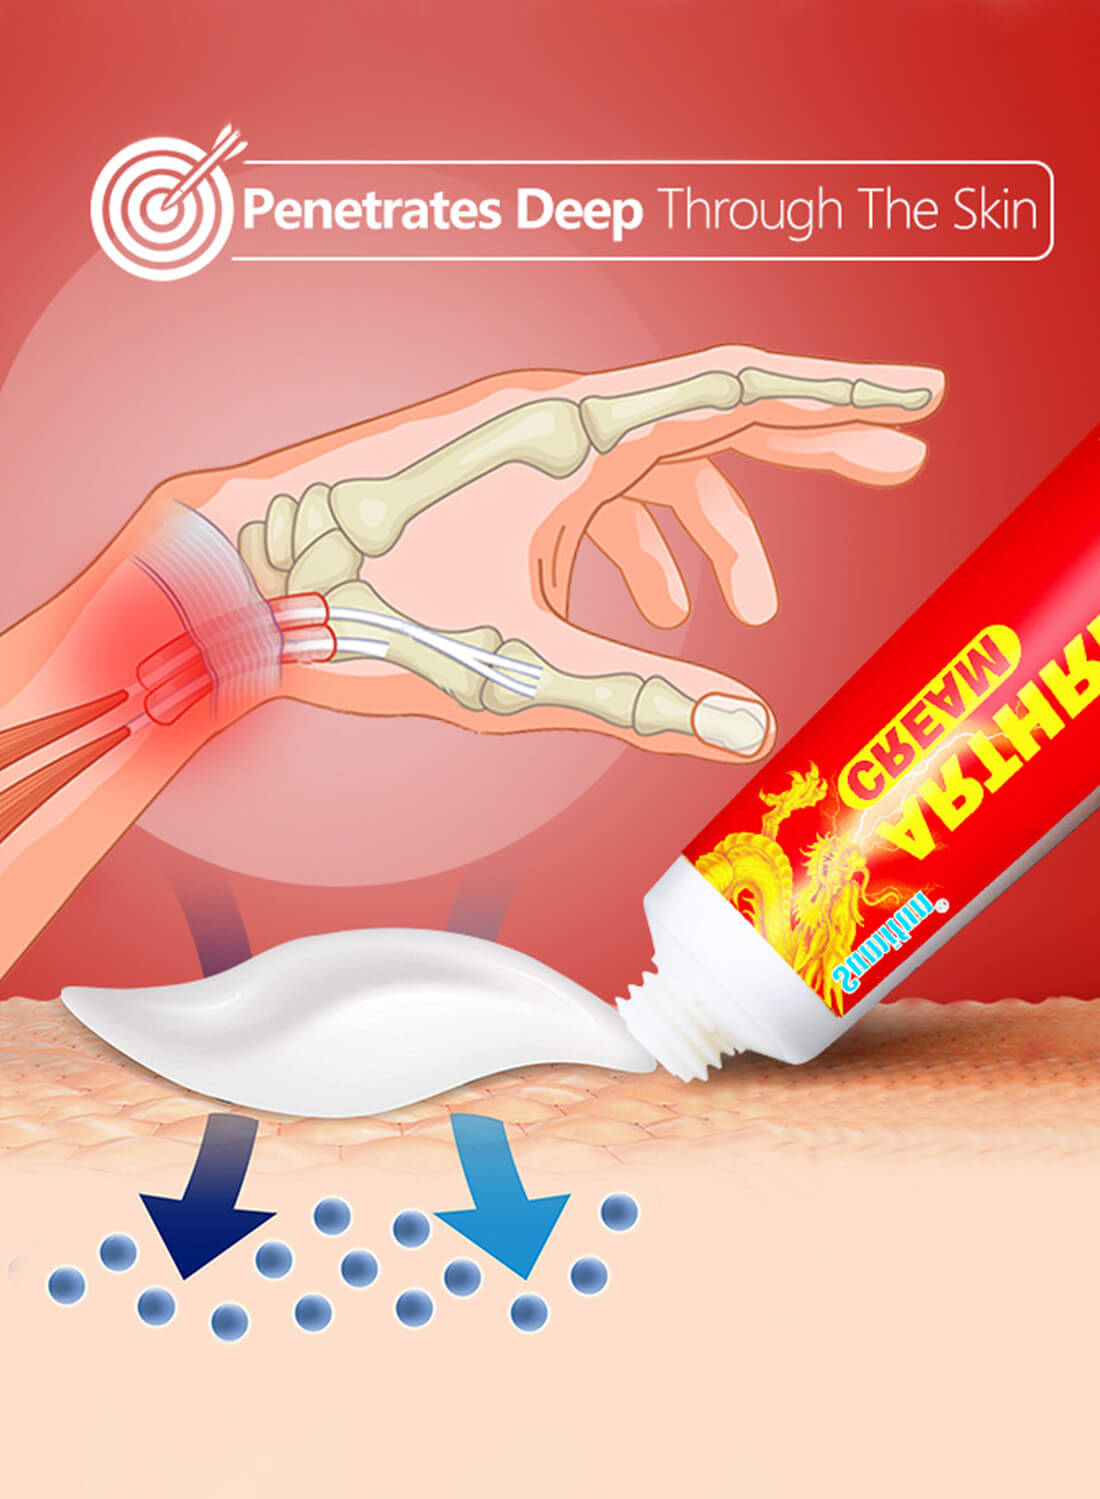 Sumifun Arthritis Joint Pain Relief Cream